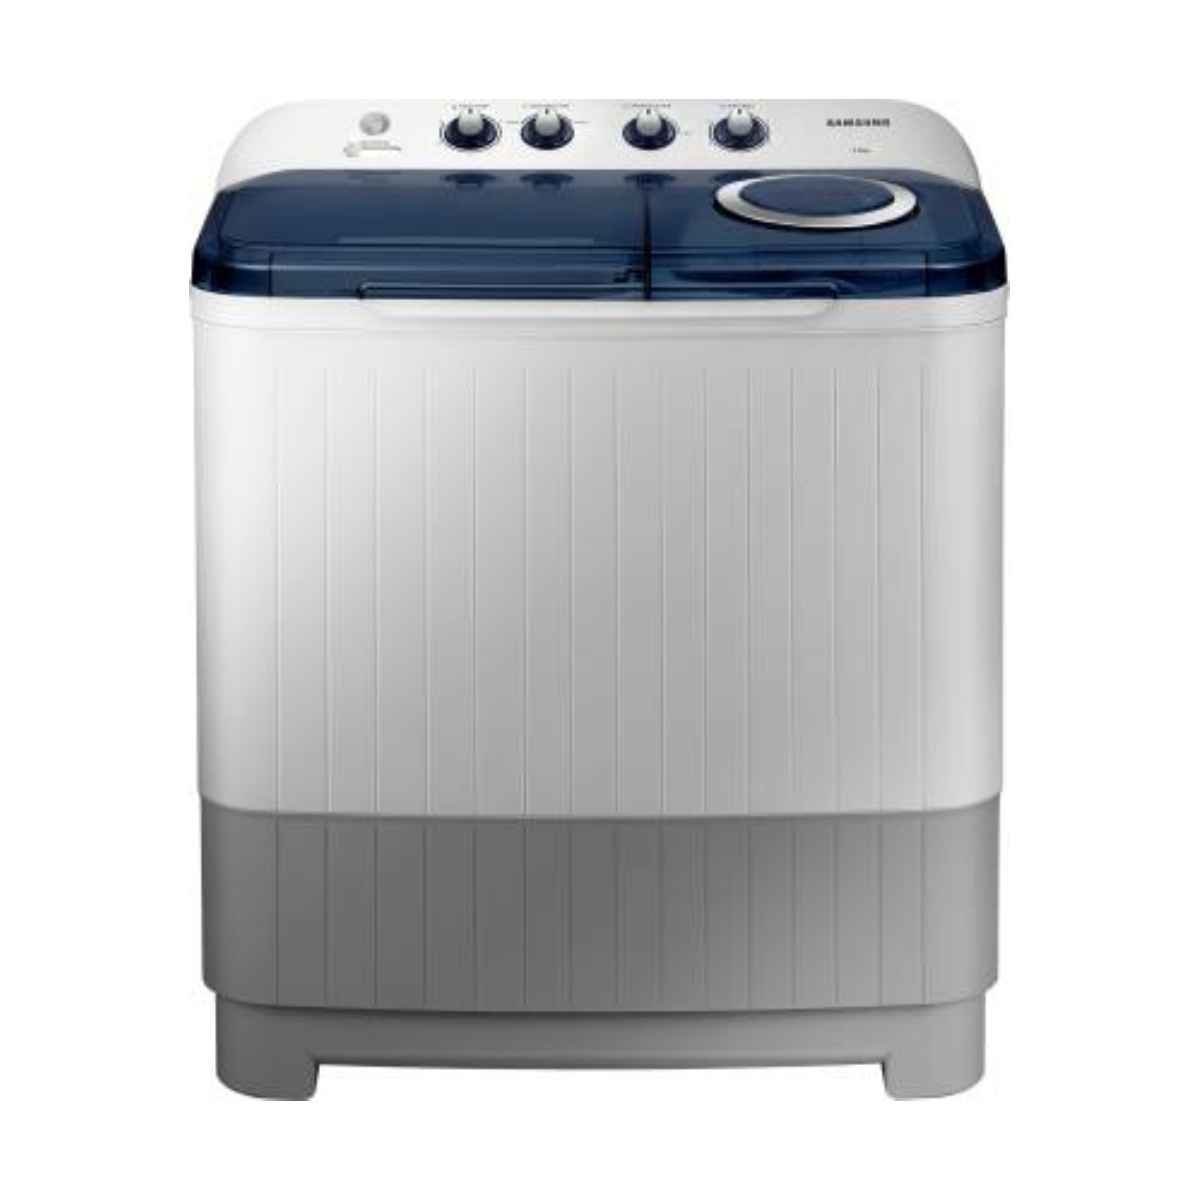 सैमसंग 7 kg Semi Automatic टॉप Load Washing machine (WT70M3200HB/TL) 